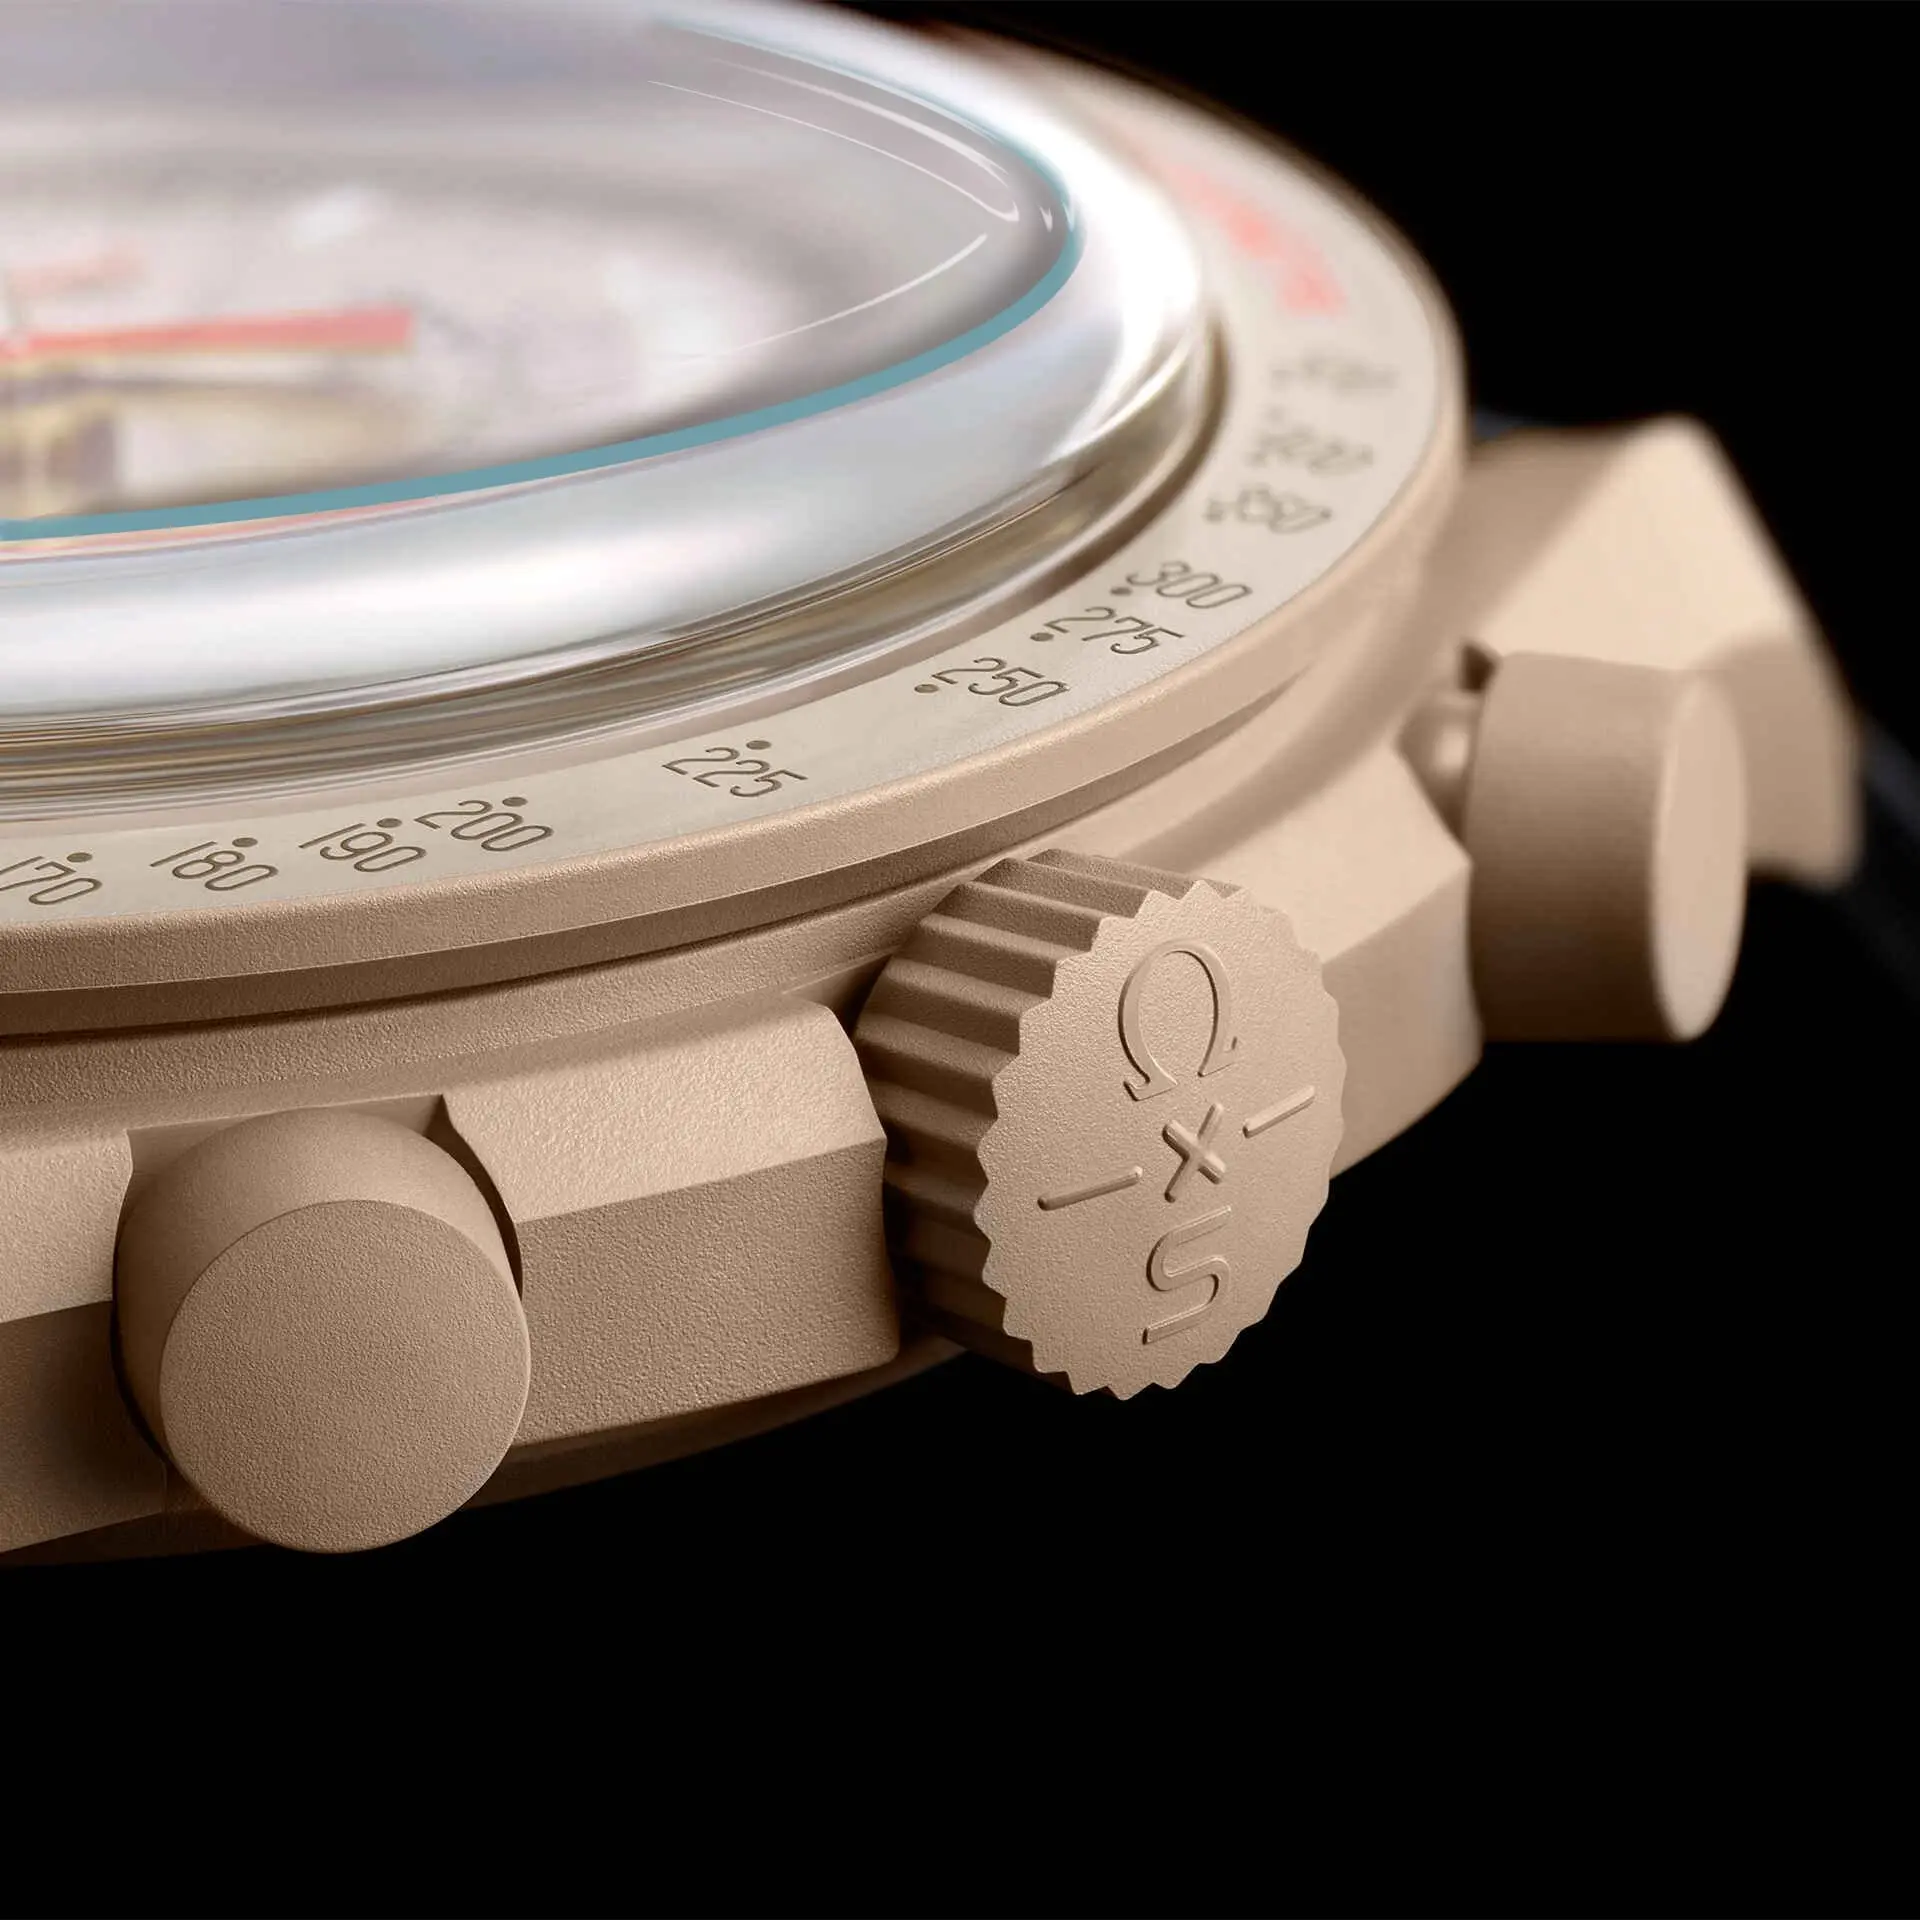 5 шт. Защитная пленка для экрана Omega X Swatch MoonSwatch Planet Watch, мягкая прозрачная защитная пленка из гидрогеля TPU, не стекло Изображение 5 